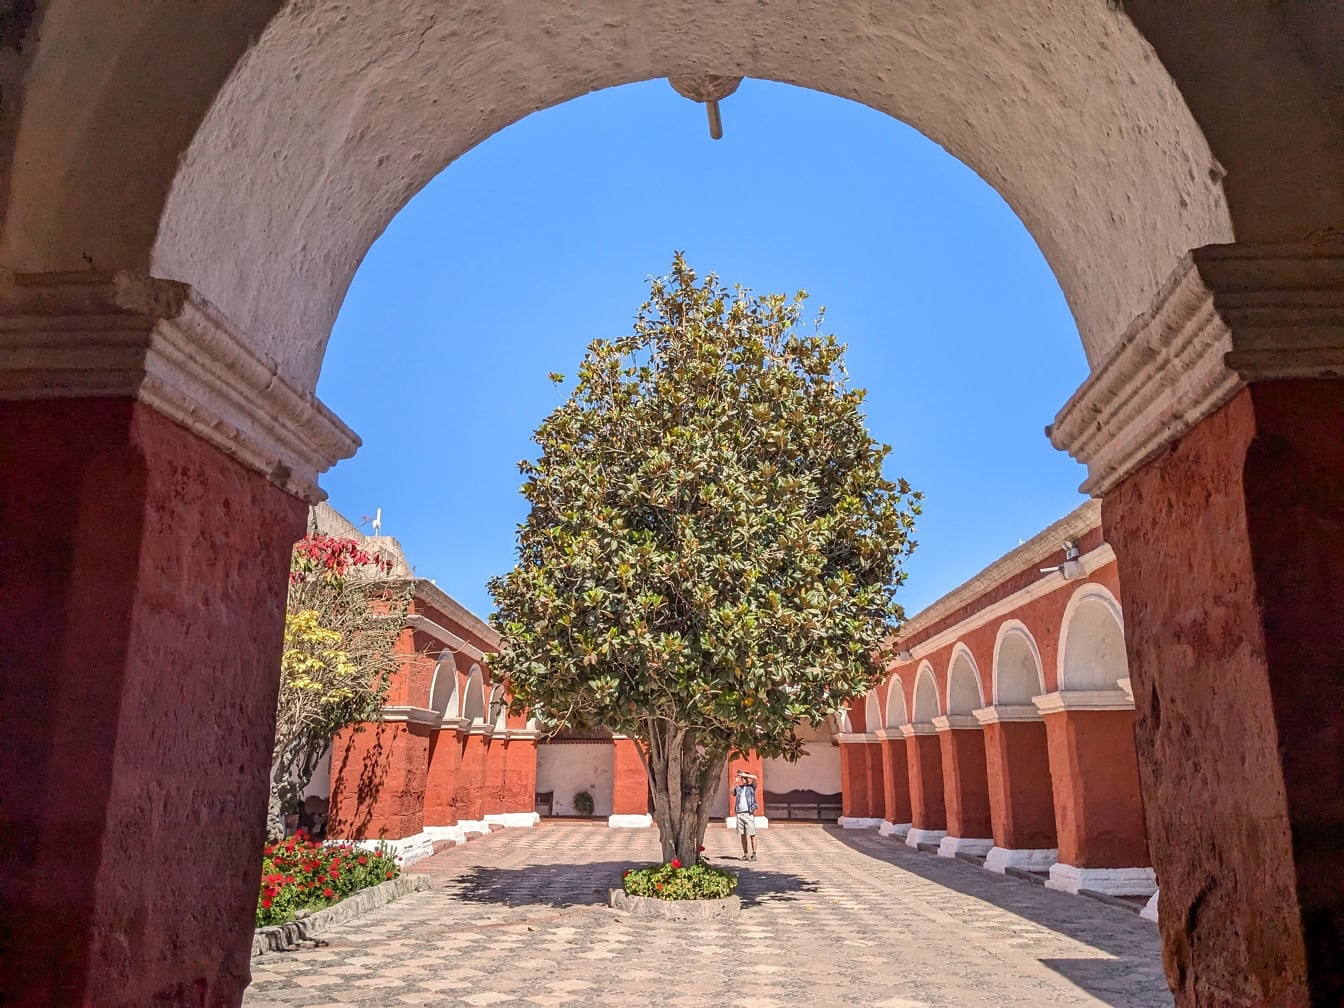 Δέντρο σε αυλή στο μοναστήρι Santa Catalina de Siena στην Arequipa στο Περού, μνημείο παγκόσμιας κληρονομιάς της UNESCO